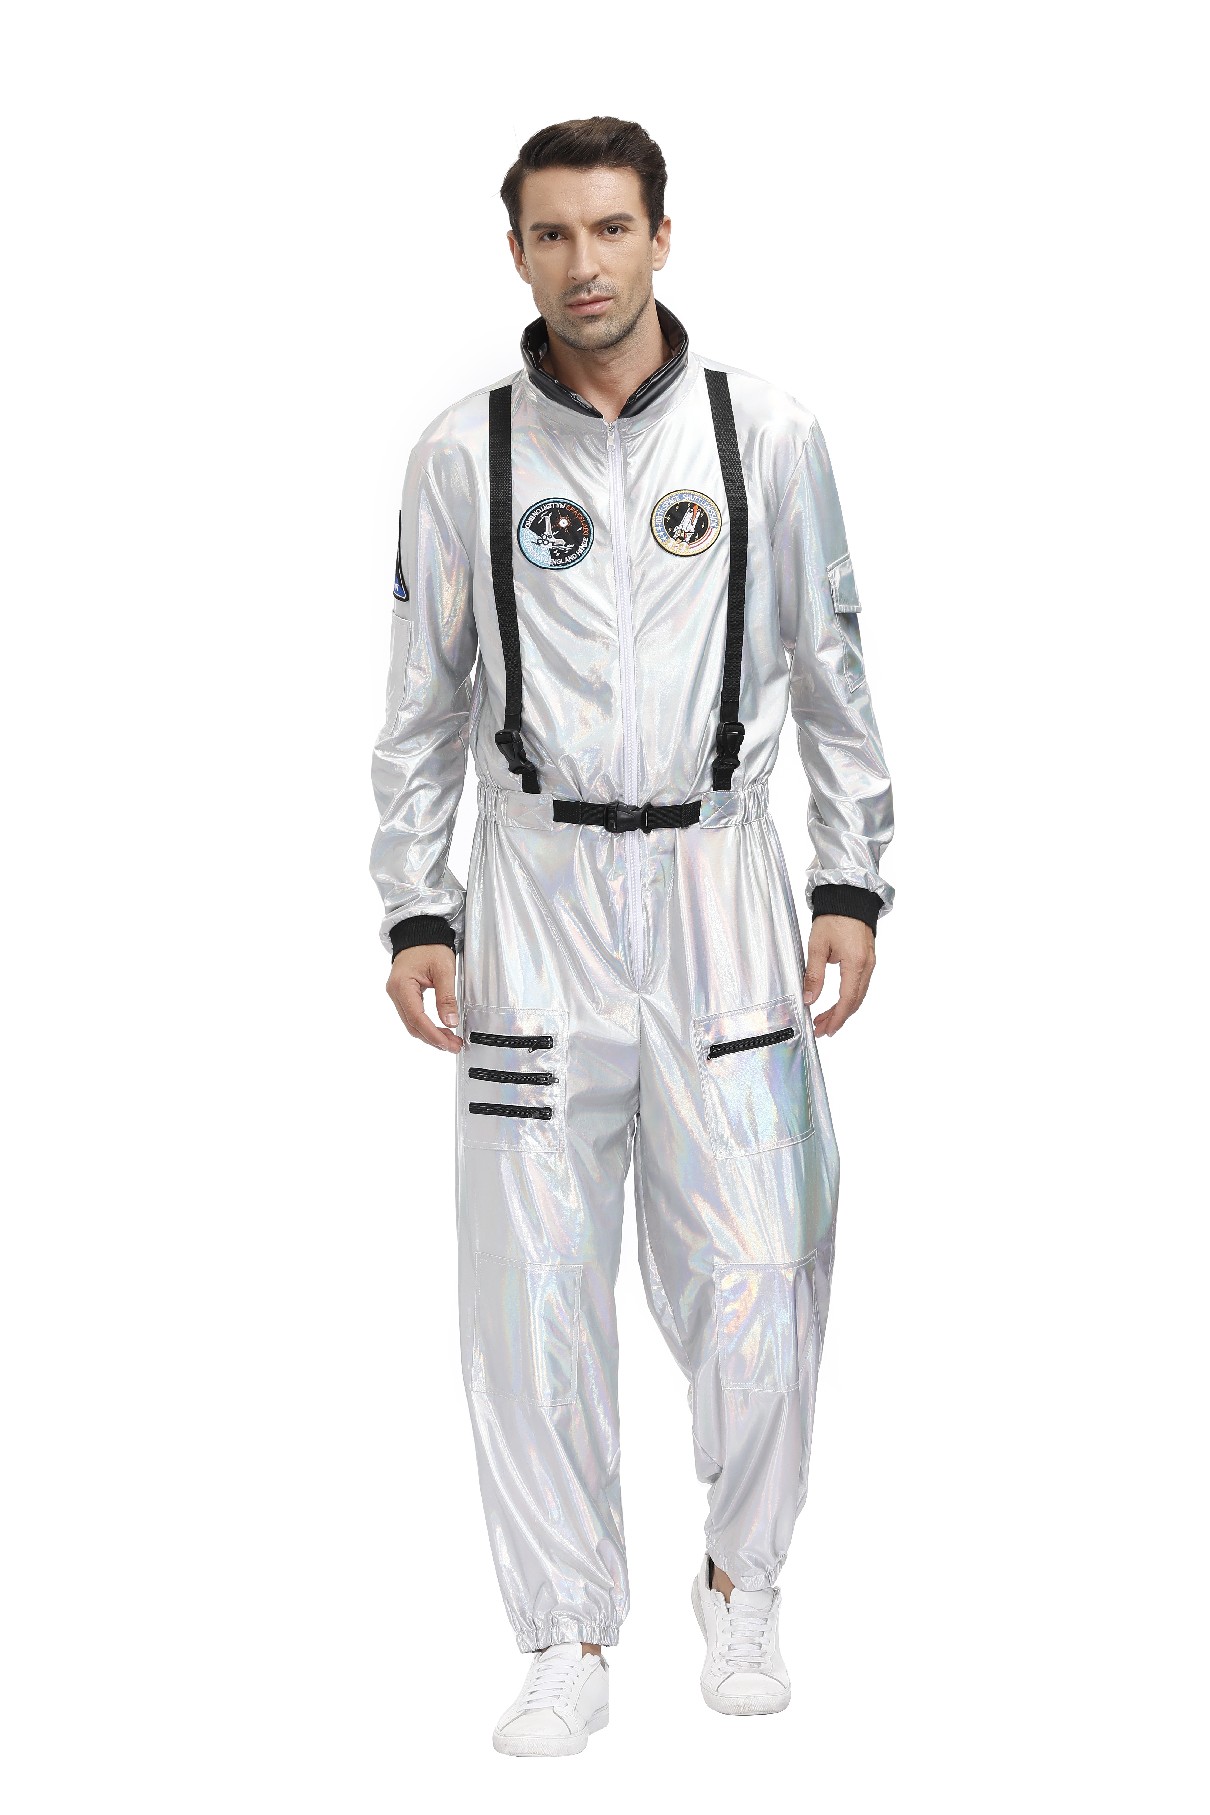 Halloween Silver Pilot Astronaut Alien Spaceman Cosplay Costume